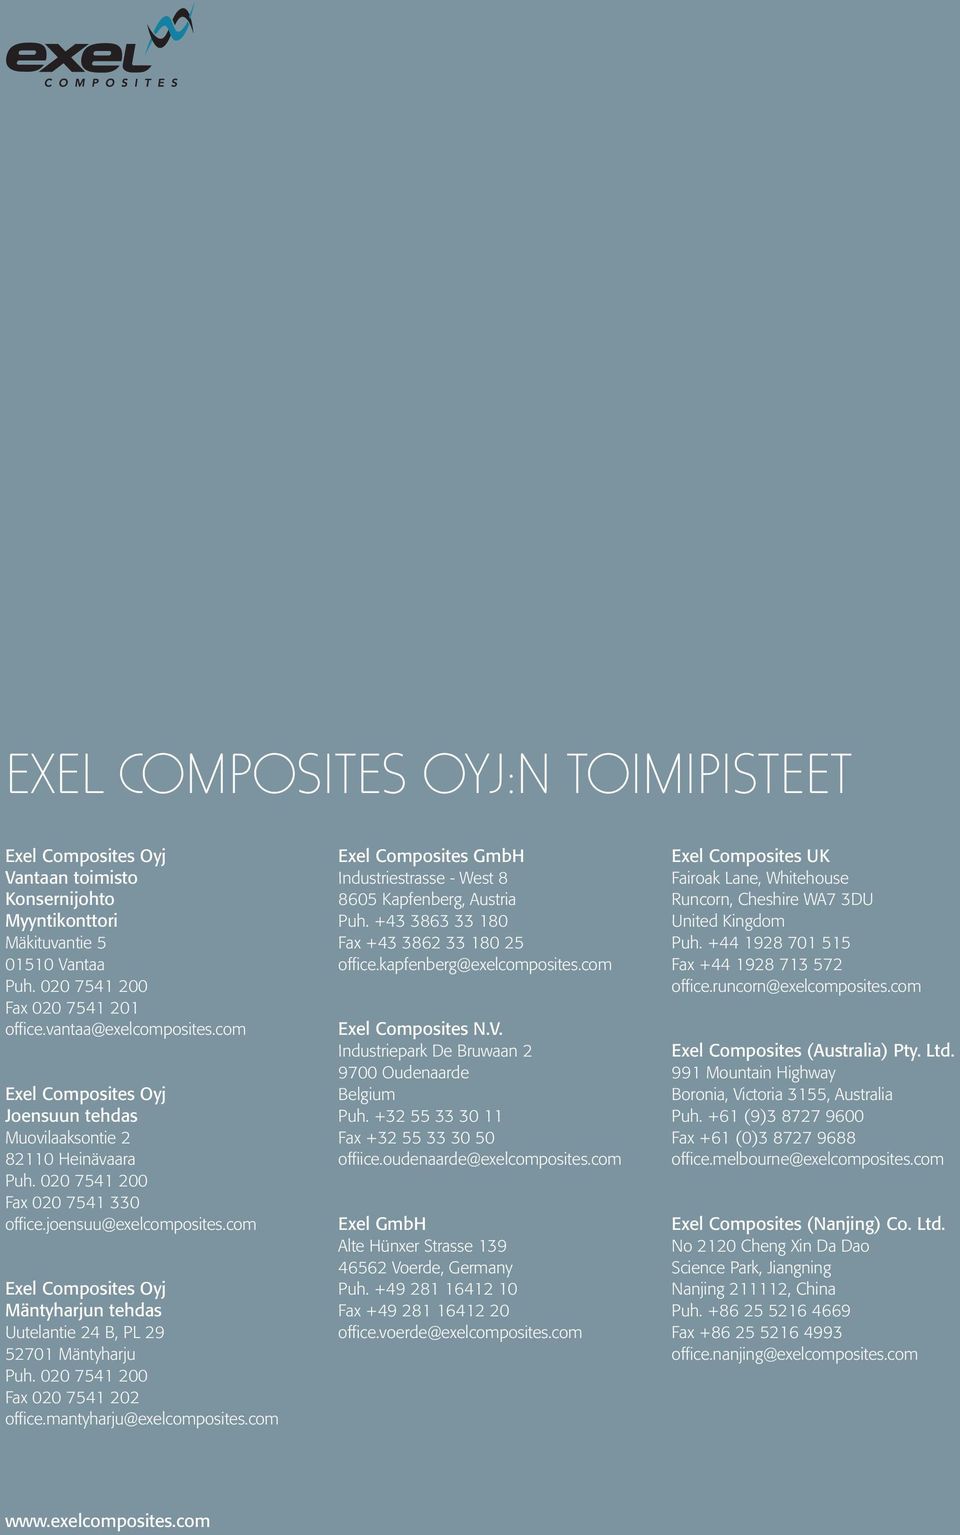 com Exel Composites Oyj Mäntyharjun tehdas Uutelantie 24 B, PL 29 52701 Mäntyharju Puh. 020 7541 200 Fax 020 7541 202 office.mantyharju@exelcomposites.